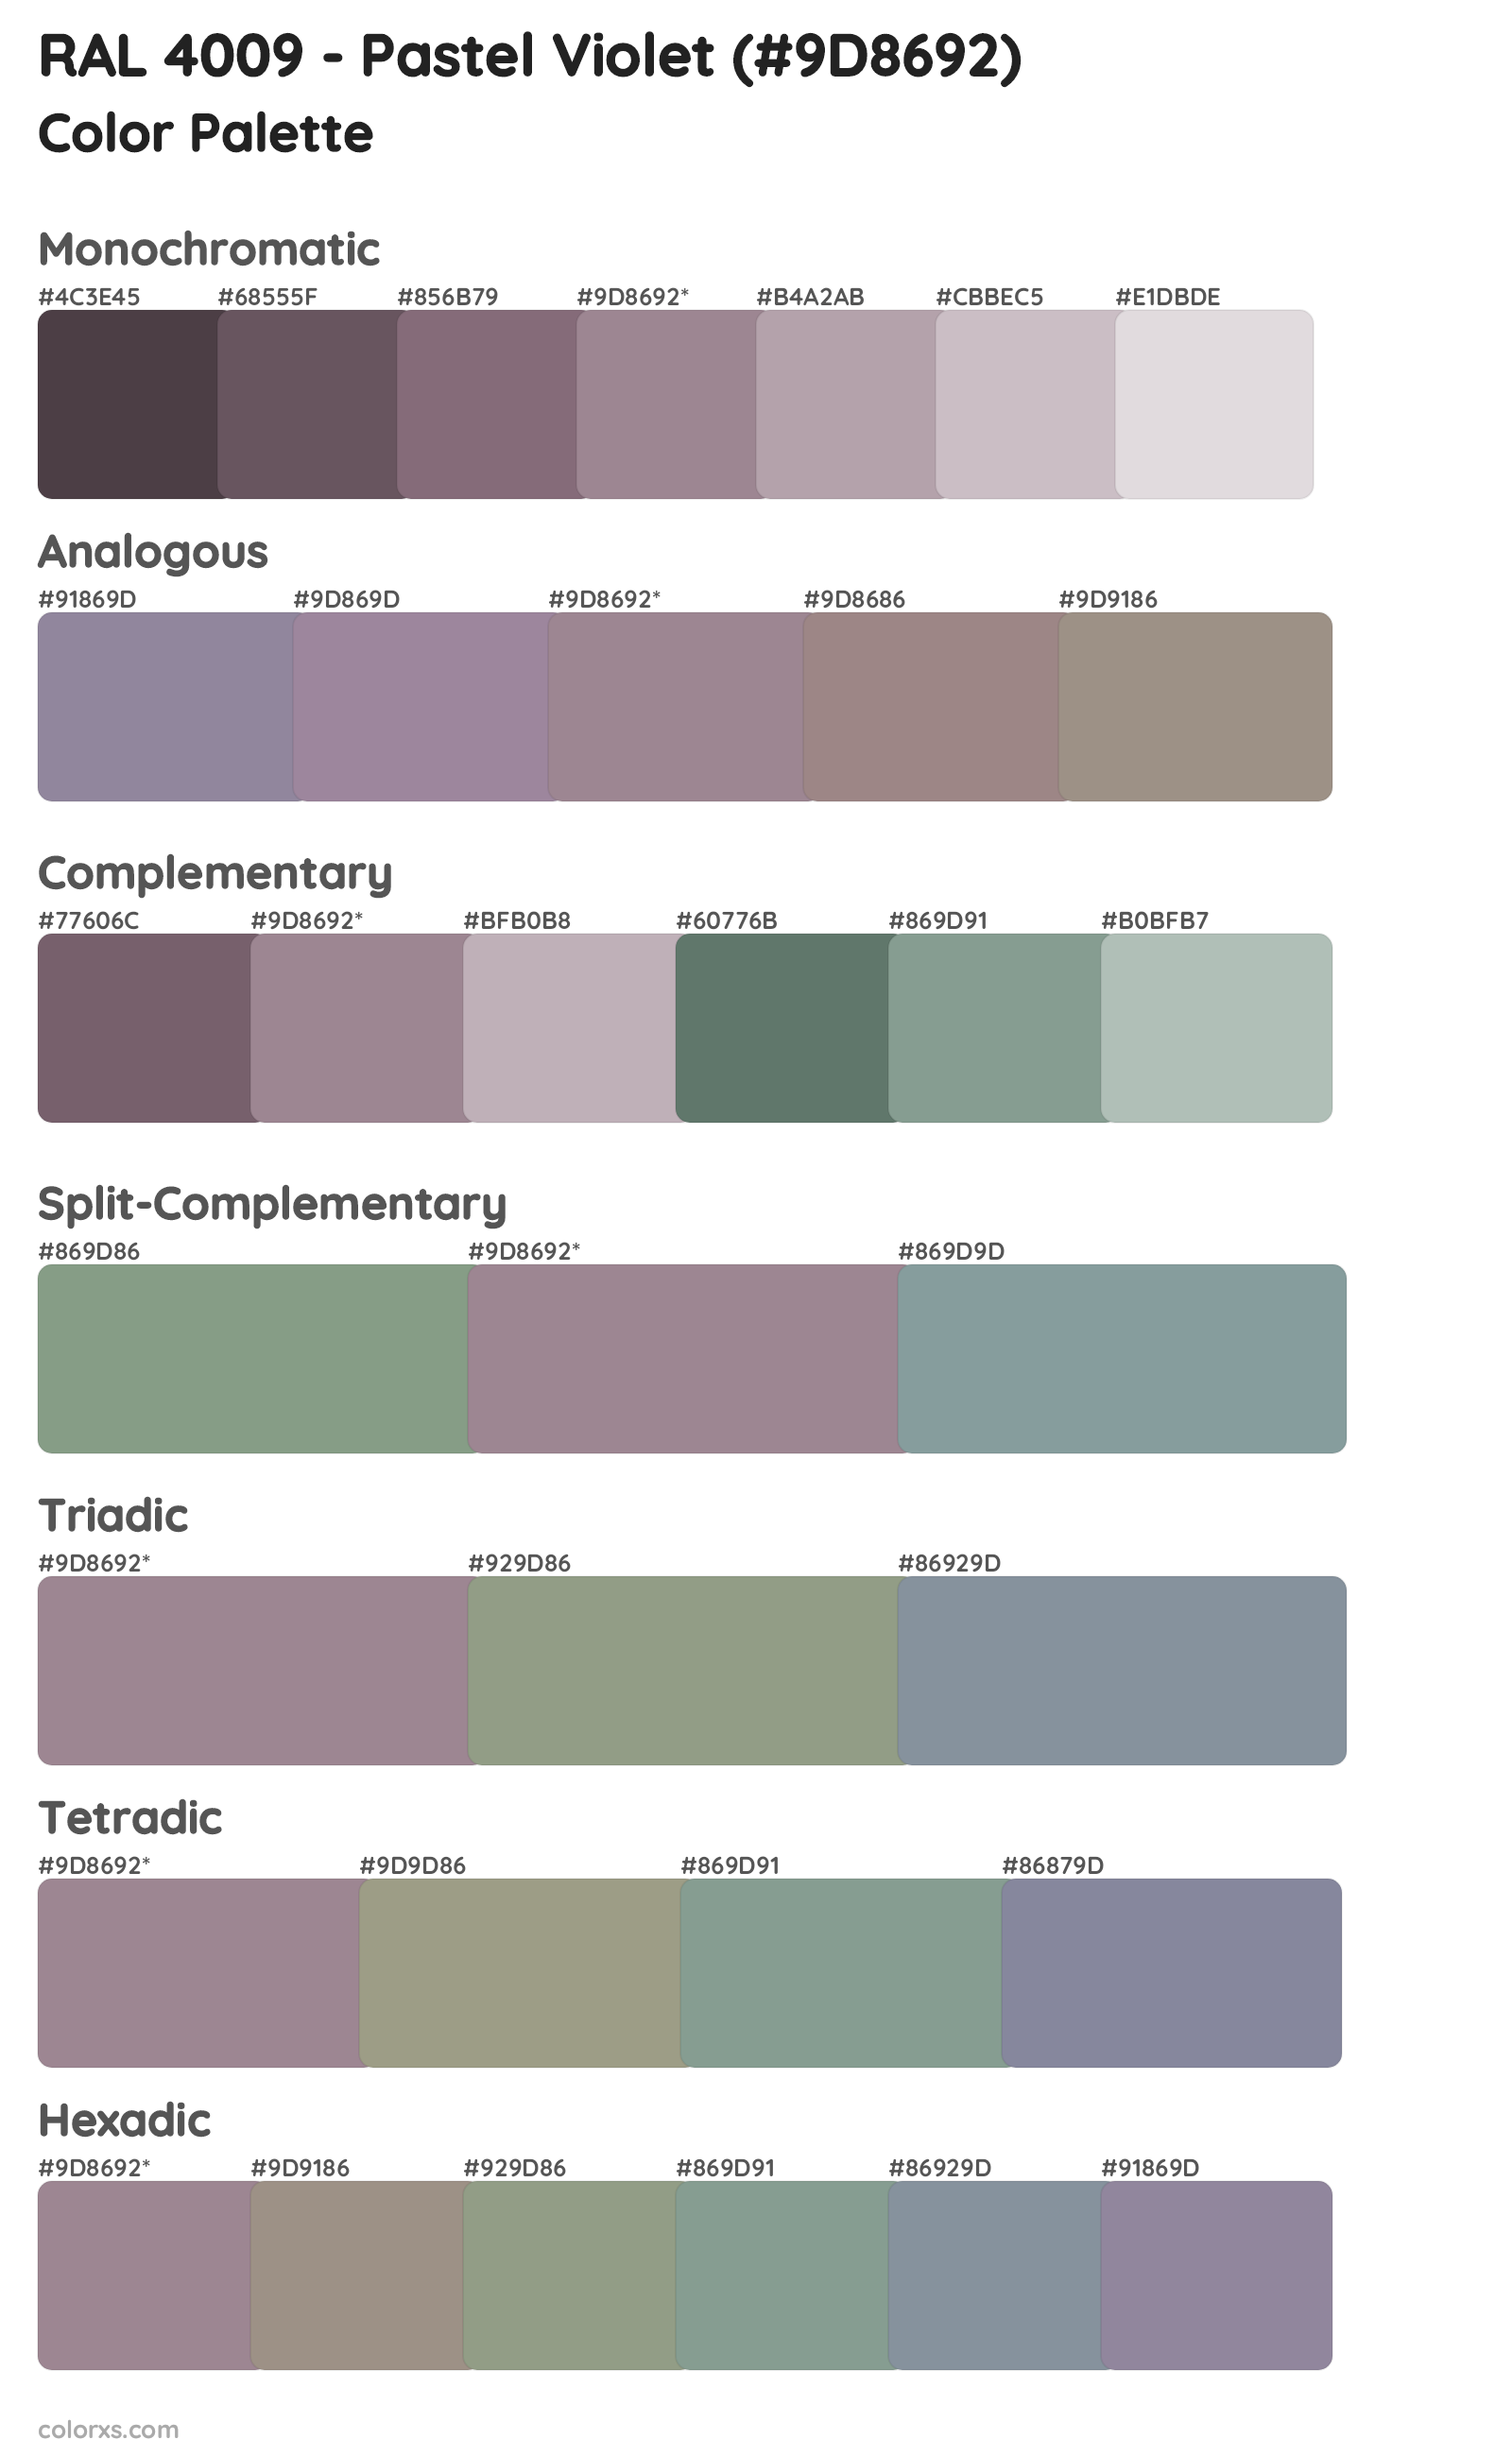 RAL 4009 - Pastel Violet Color Scheme Palettes